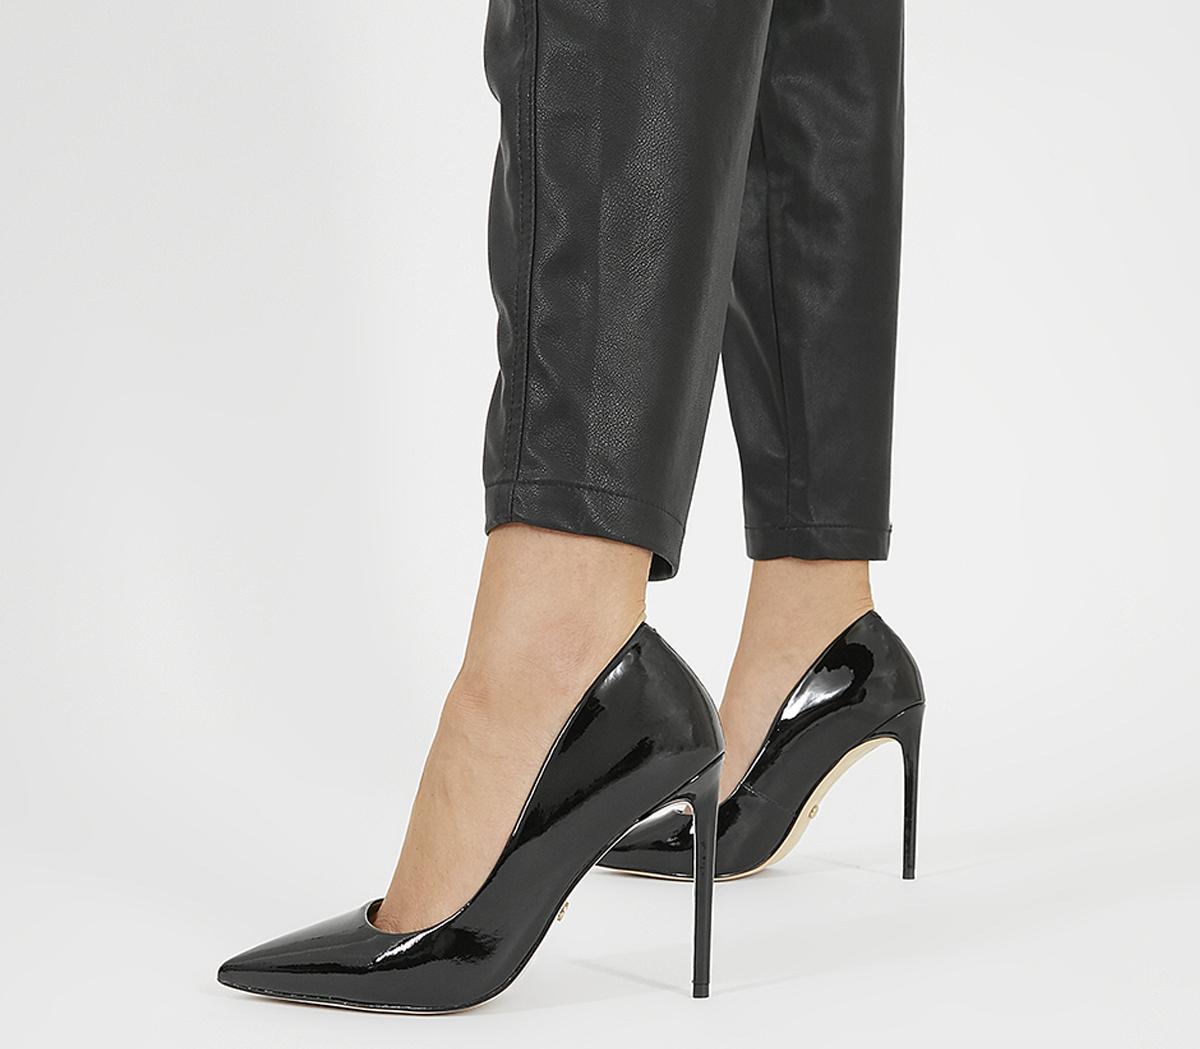 black patent stiletto shoes